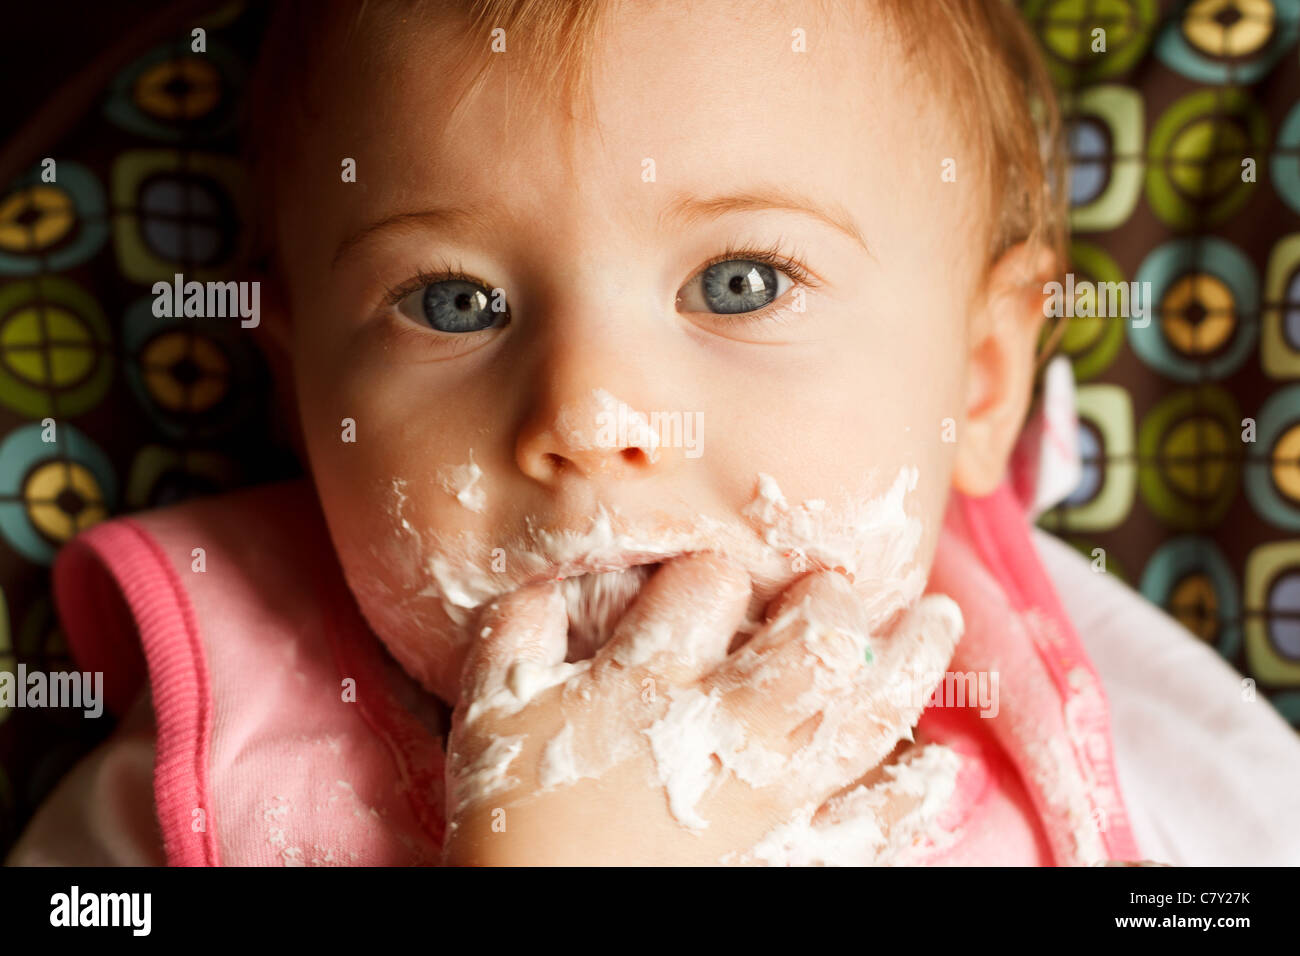 Baby Girl Faire un gâchis tout en alimentant elle-même cake Banque D'Images